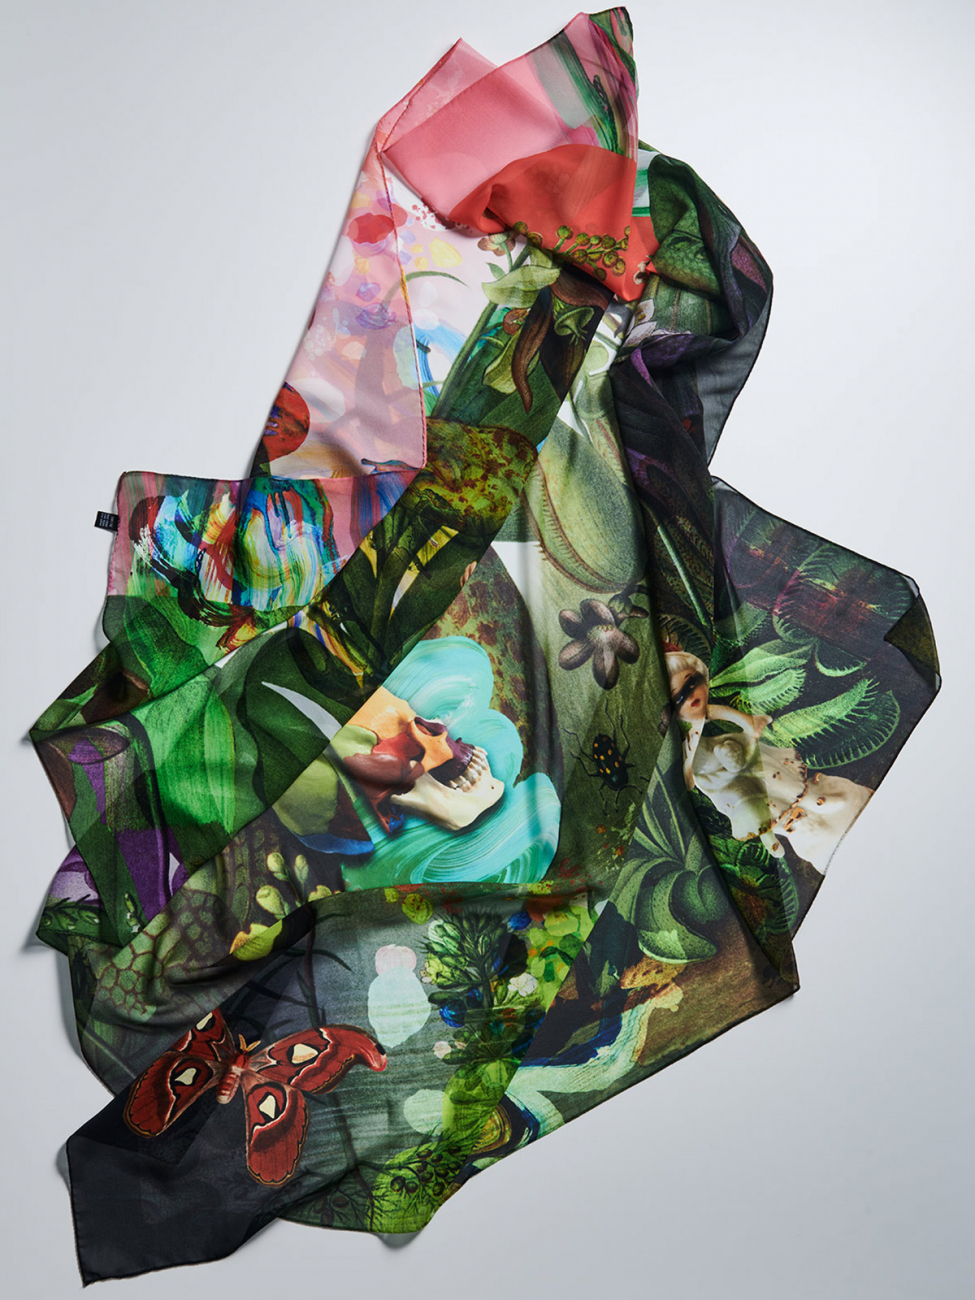 schal-inkjetprint-textldesign-scarf-textildesigner-silk-seide-accessoires-design-fashion